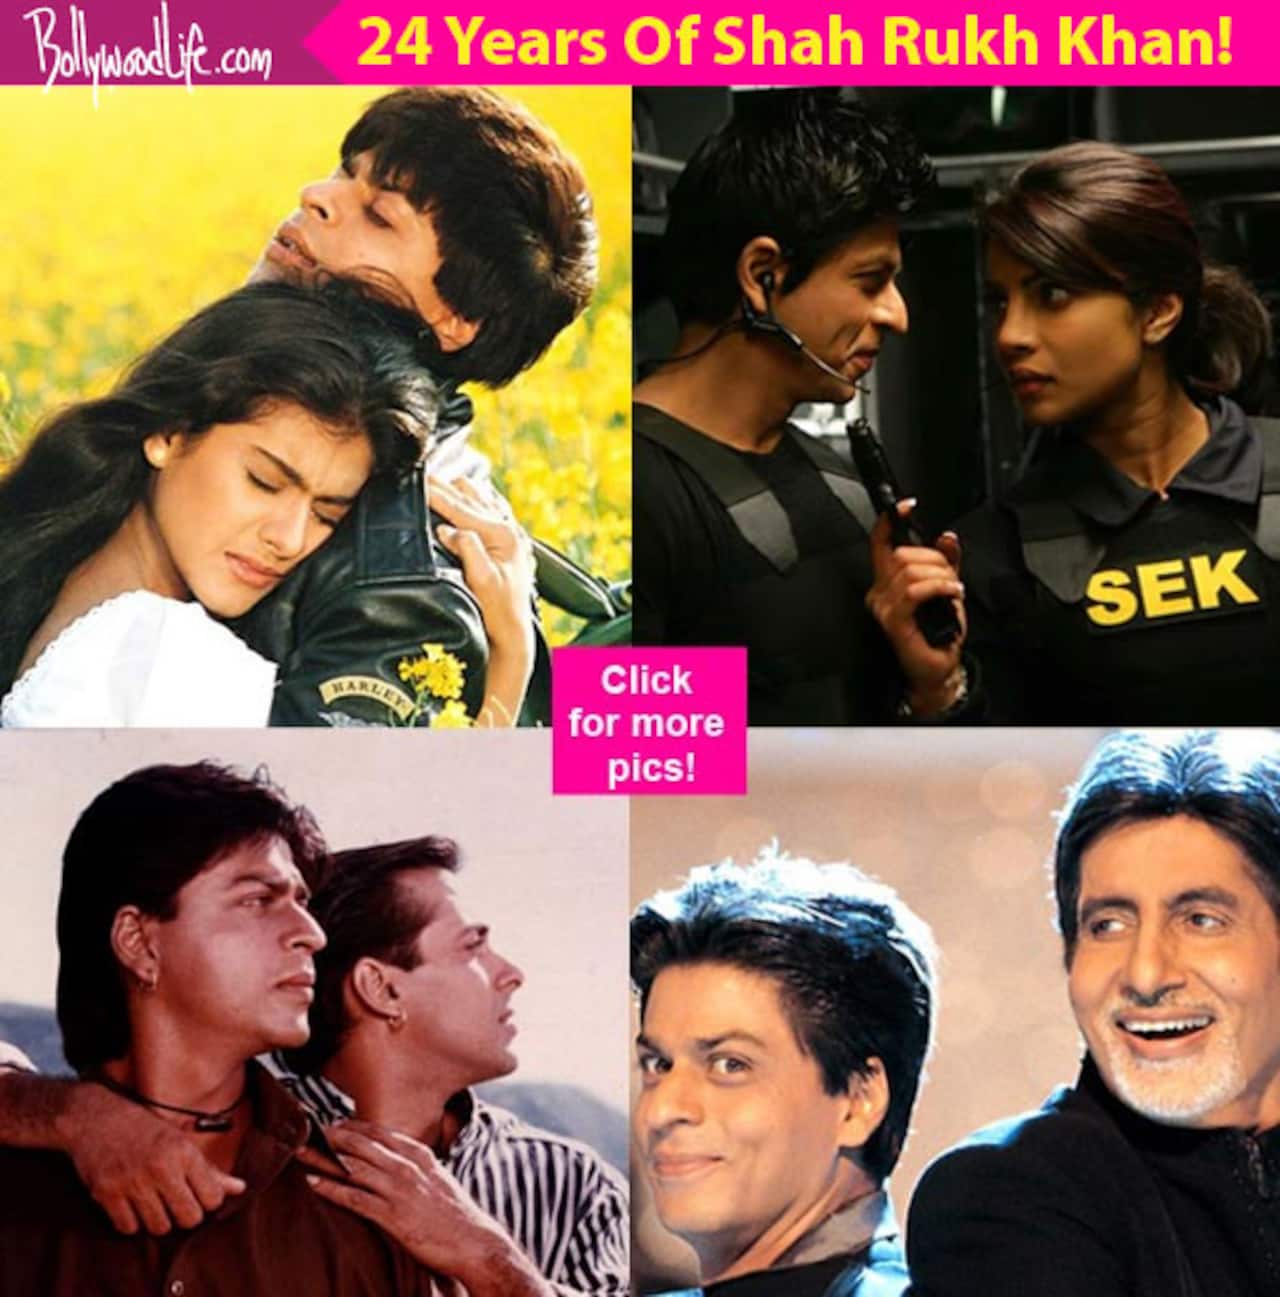 24 years of Shah Rukh Khan: Kajol, Deepika Padukone, Priyanka Chopra - listing 24 of King Khan's best co-stars!